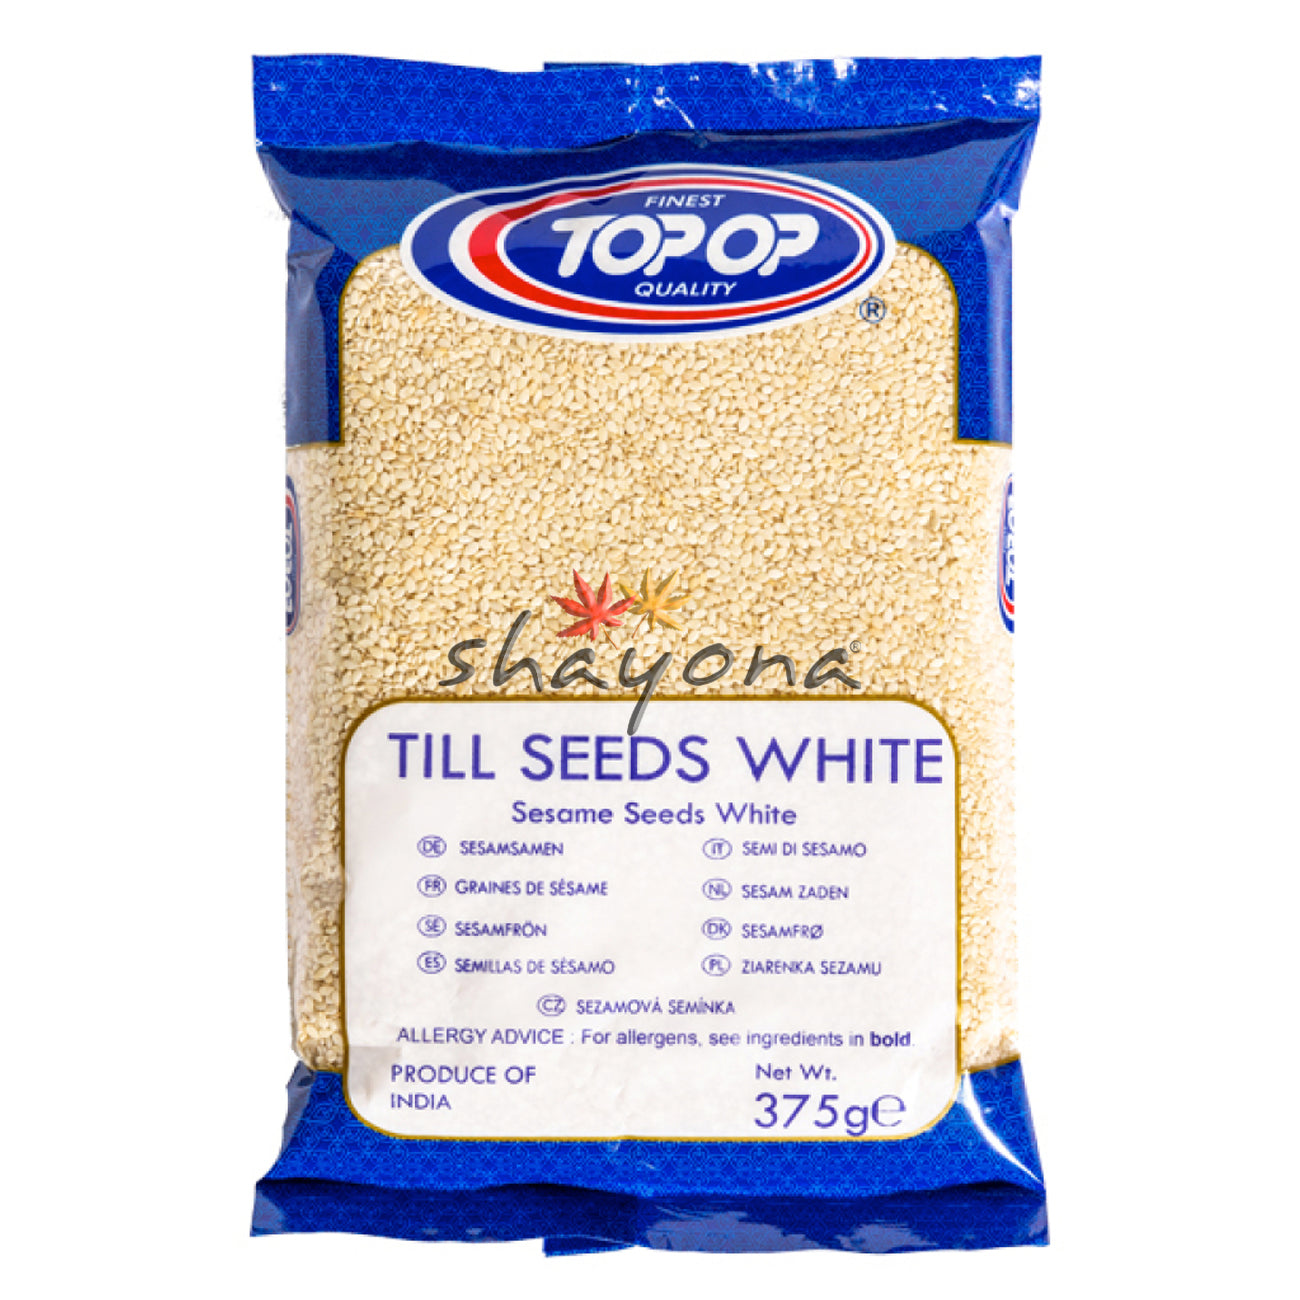 TopOp Till Seeds White